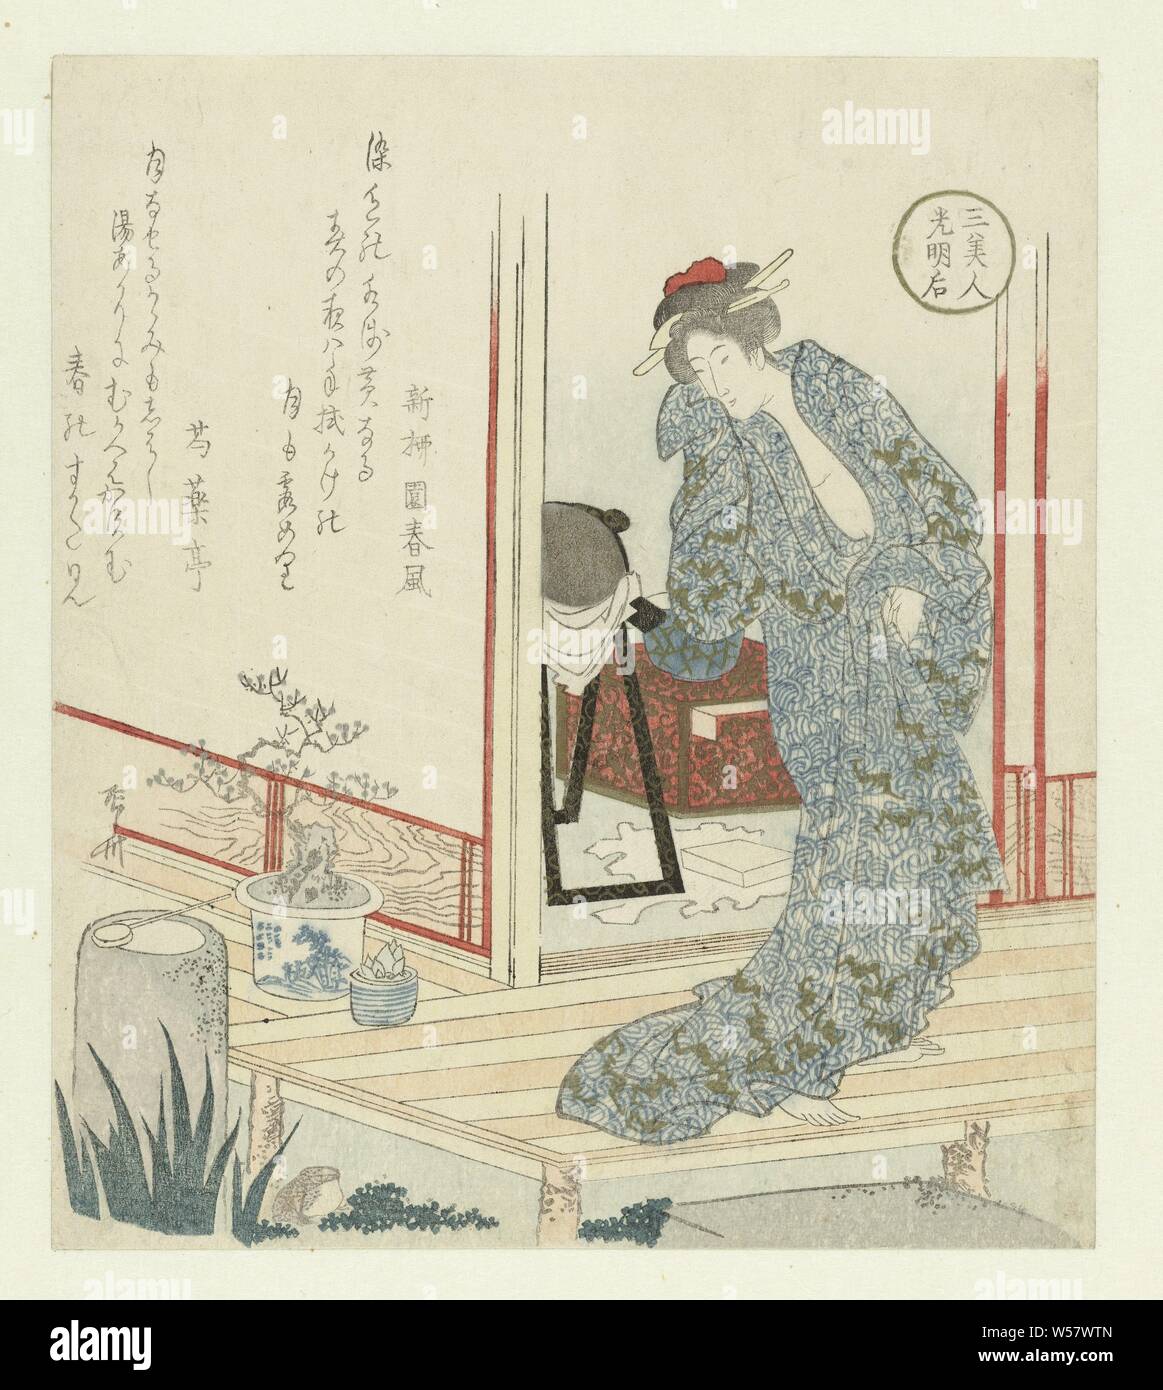 La Emperatriz Kômyôgô Kômyôgô (título de objeto) 3 bellezas (título de la serie) San bijin (título de la serie en el objeto), la Emperatriz Kômyôgô envuelta en un kimono veraniego (yukata) mira a un gran camino. Kômyôgô era la esposa del emperador Shômu (701-756) y fundó las casas de baños públicos en Japón. Un día ella fue probado por Buda cuando él apareció ante ella como un leproso. La ruta hace referencia a este incidente. Con dos poemas, Ryûryûkyo Shinsai (mencionado en la película), el Japón, c. 1820 - c. 1825, papel de color, xilografía, h 205 mm × 181 mm w Foto de stock